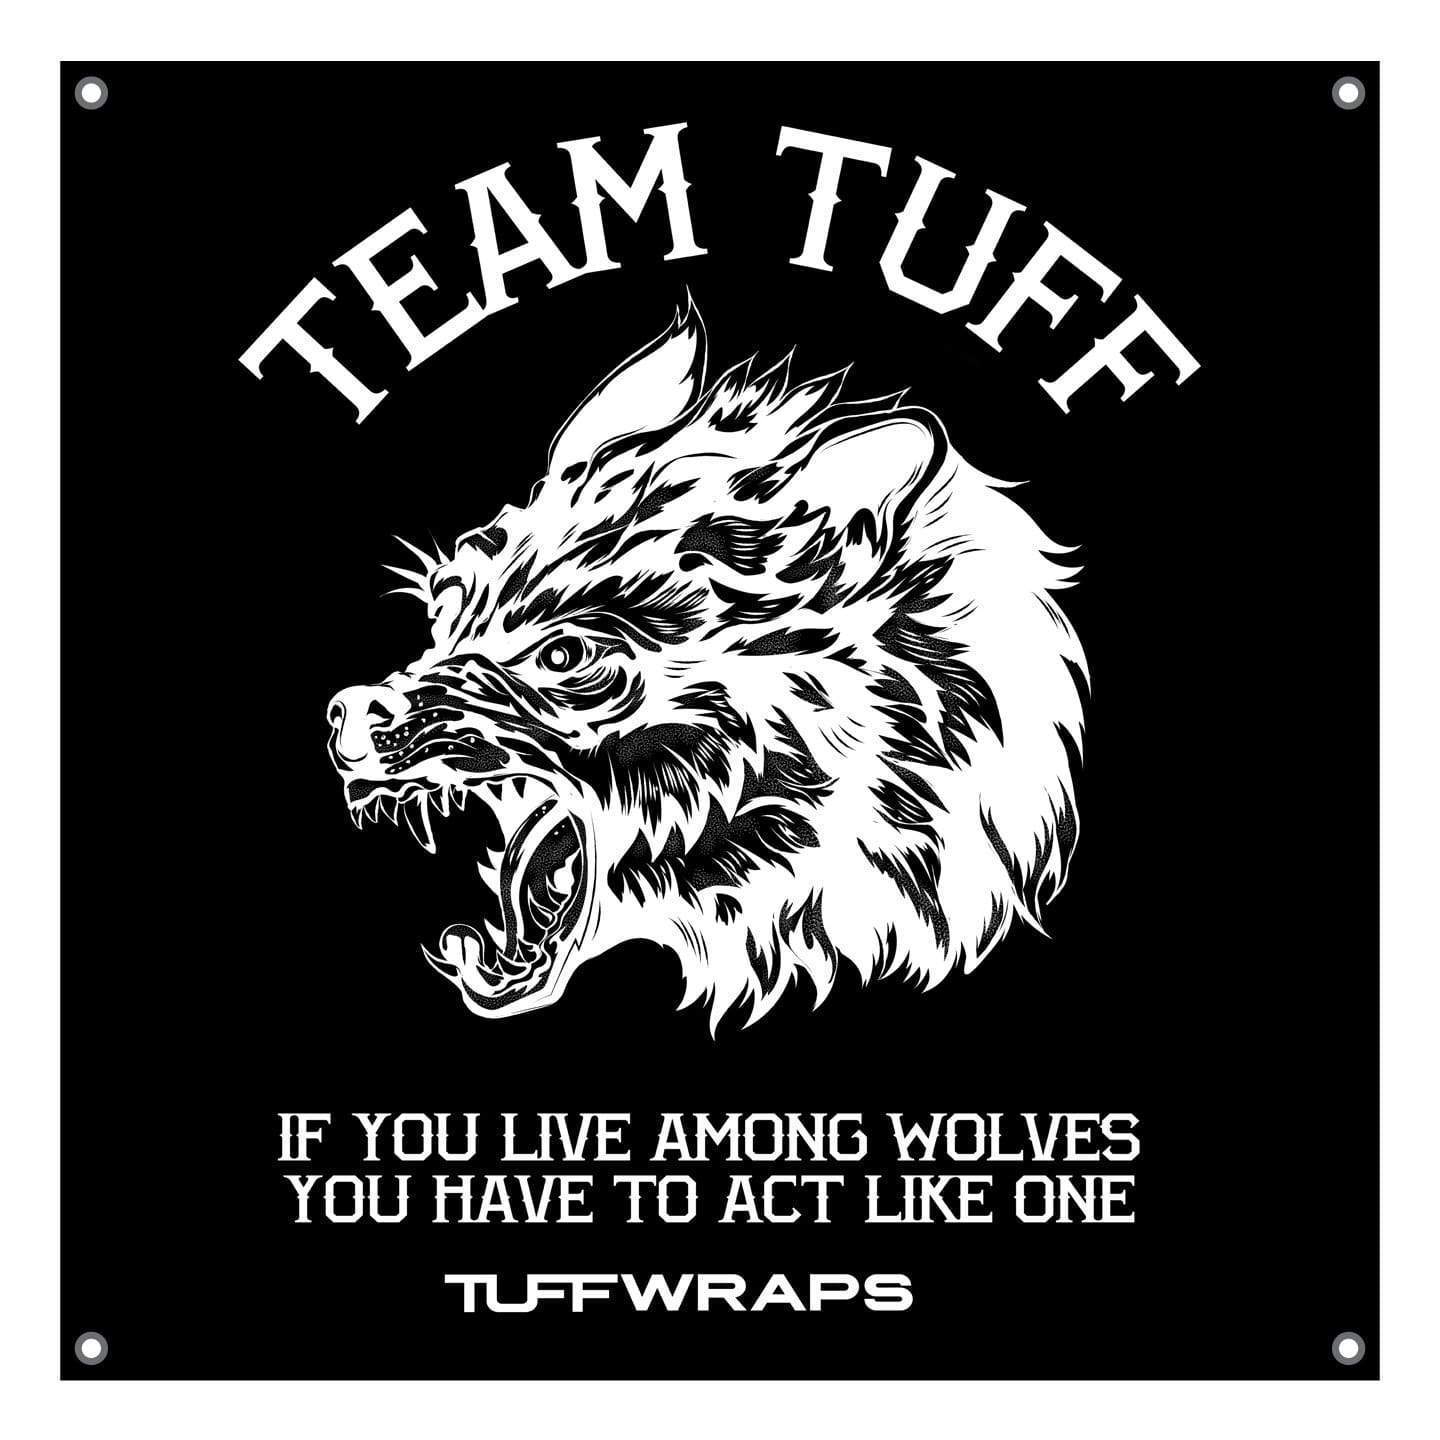 Team TUFF Wolves Club 3x3 Wall Banner Banners